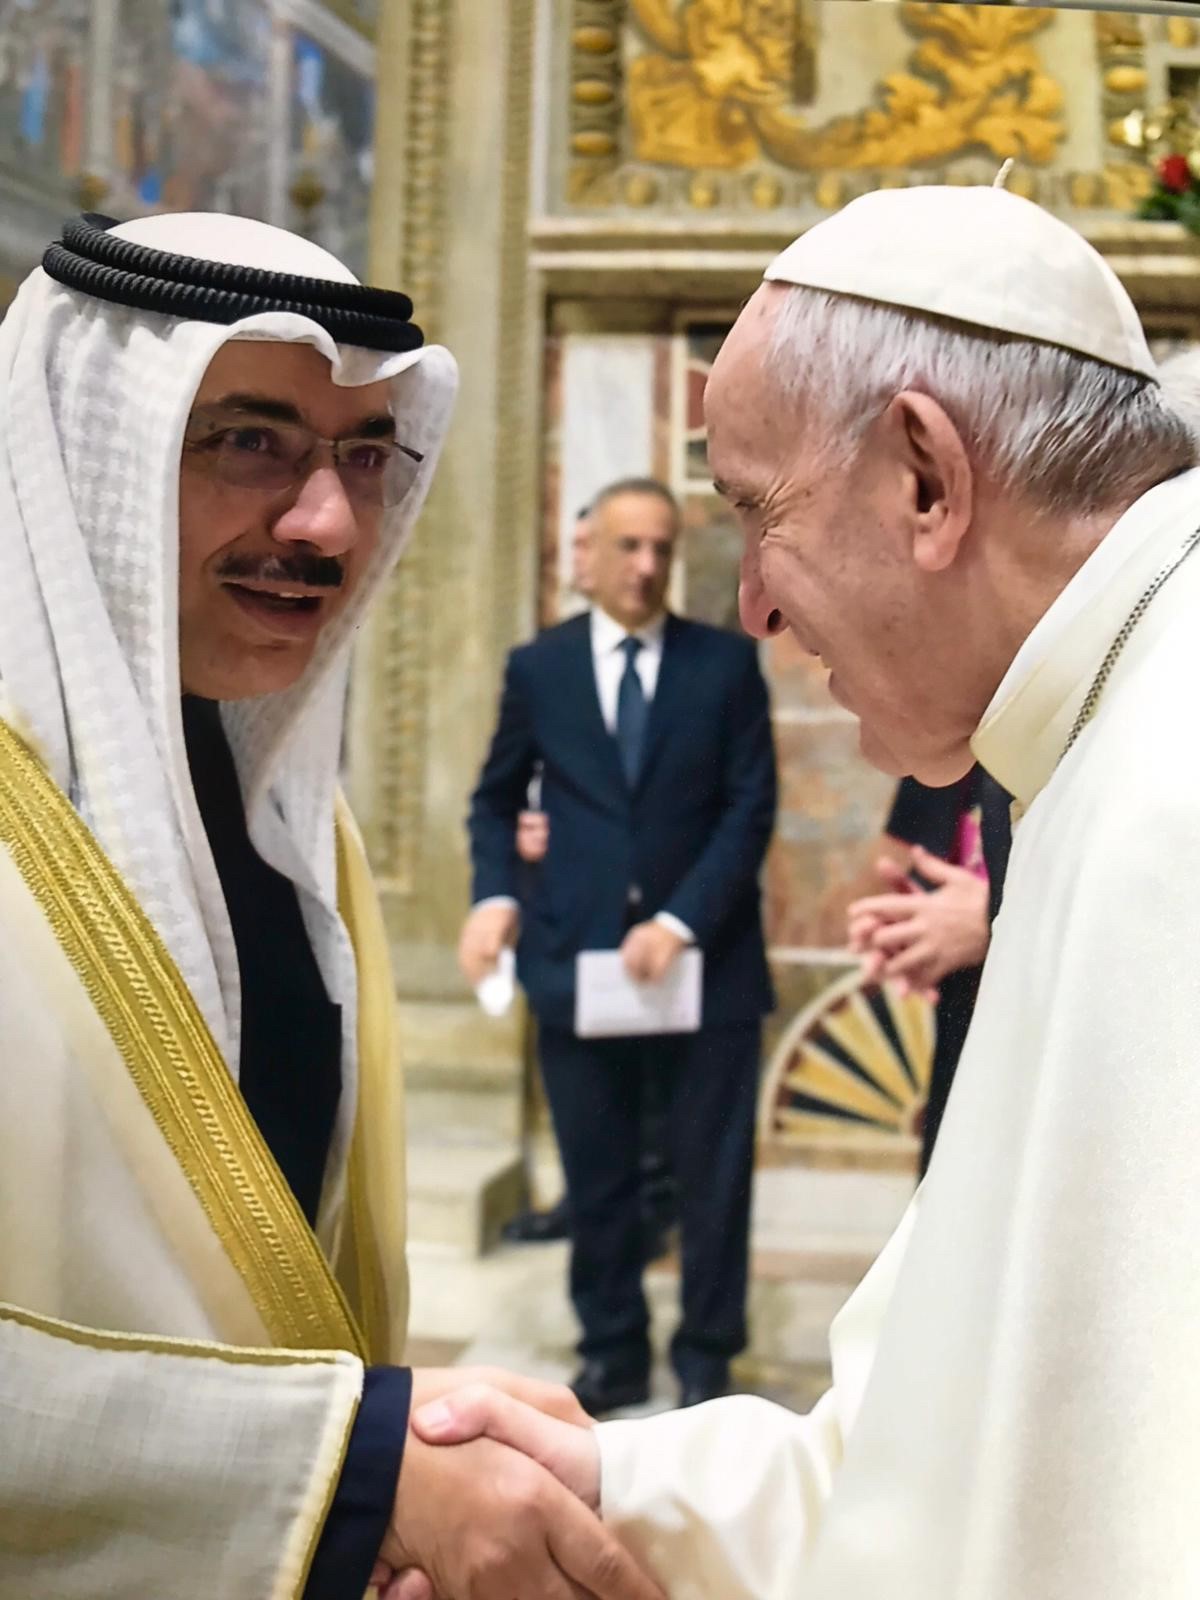 البابا فرانشيسكو يصافح سفير الكويت بدر التنيب بمناسبة التهاني بالعام الجديد